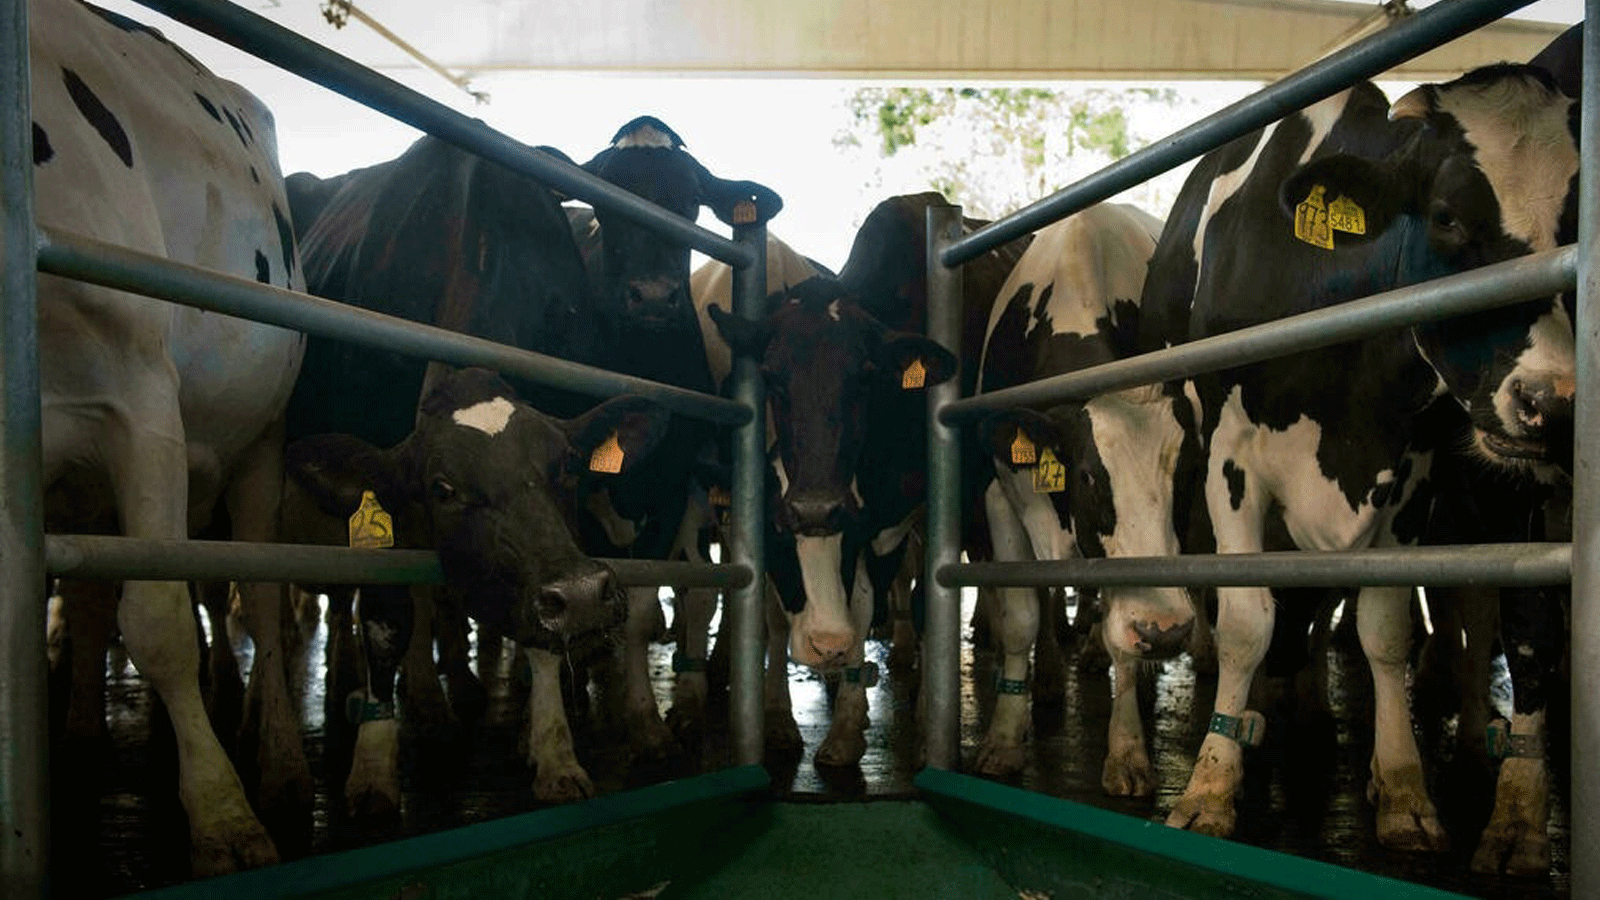 نمو قطاع الثروة الحيوانية في إسبانيا مدفوع بالطلب الخارجي على اللحوم وخاصة من الصين، وكذلك من داخل إسبانيا